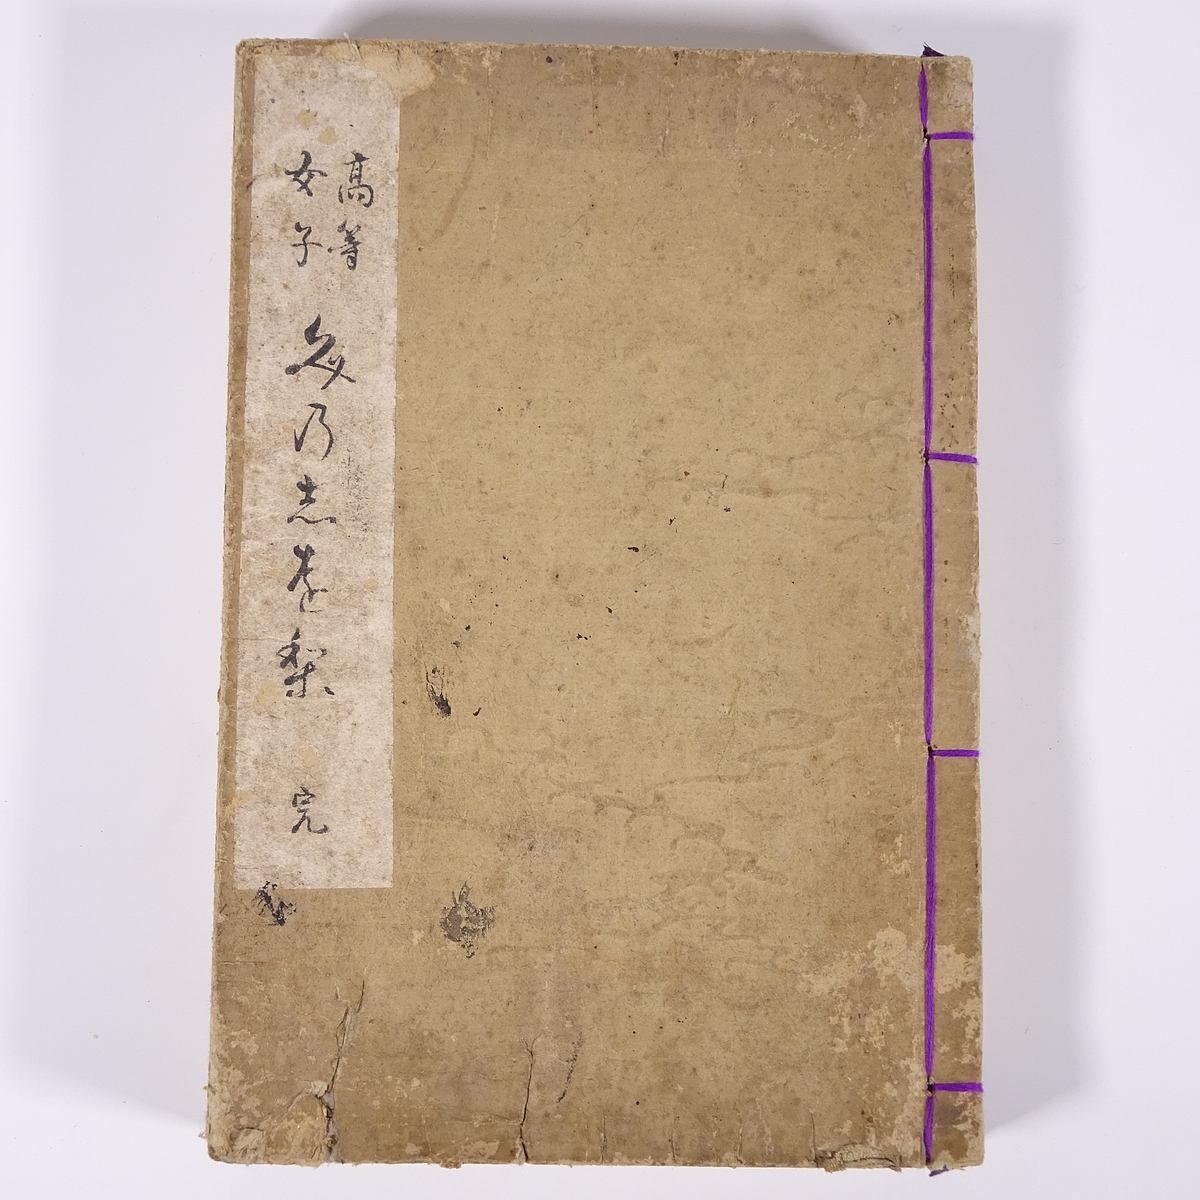  высота и т.п. женщина документ. .... средний остров подлинный . сборник Meiji три один год 1898 старинная книга мир . текст глава письмо документ 